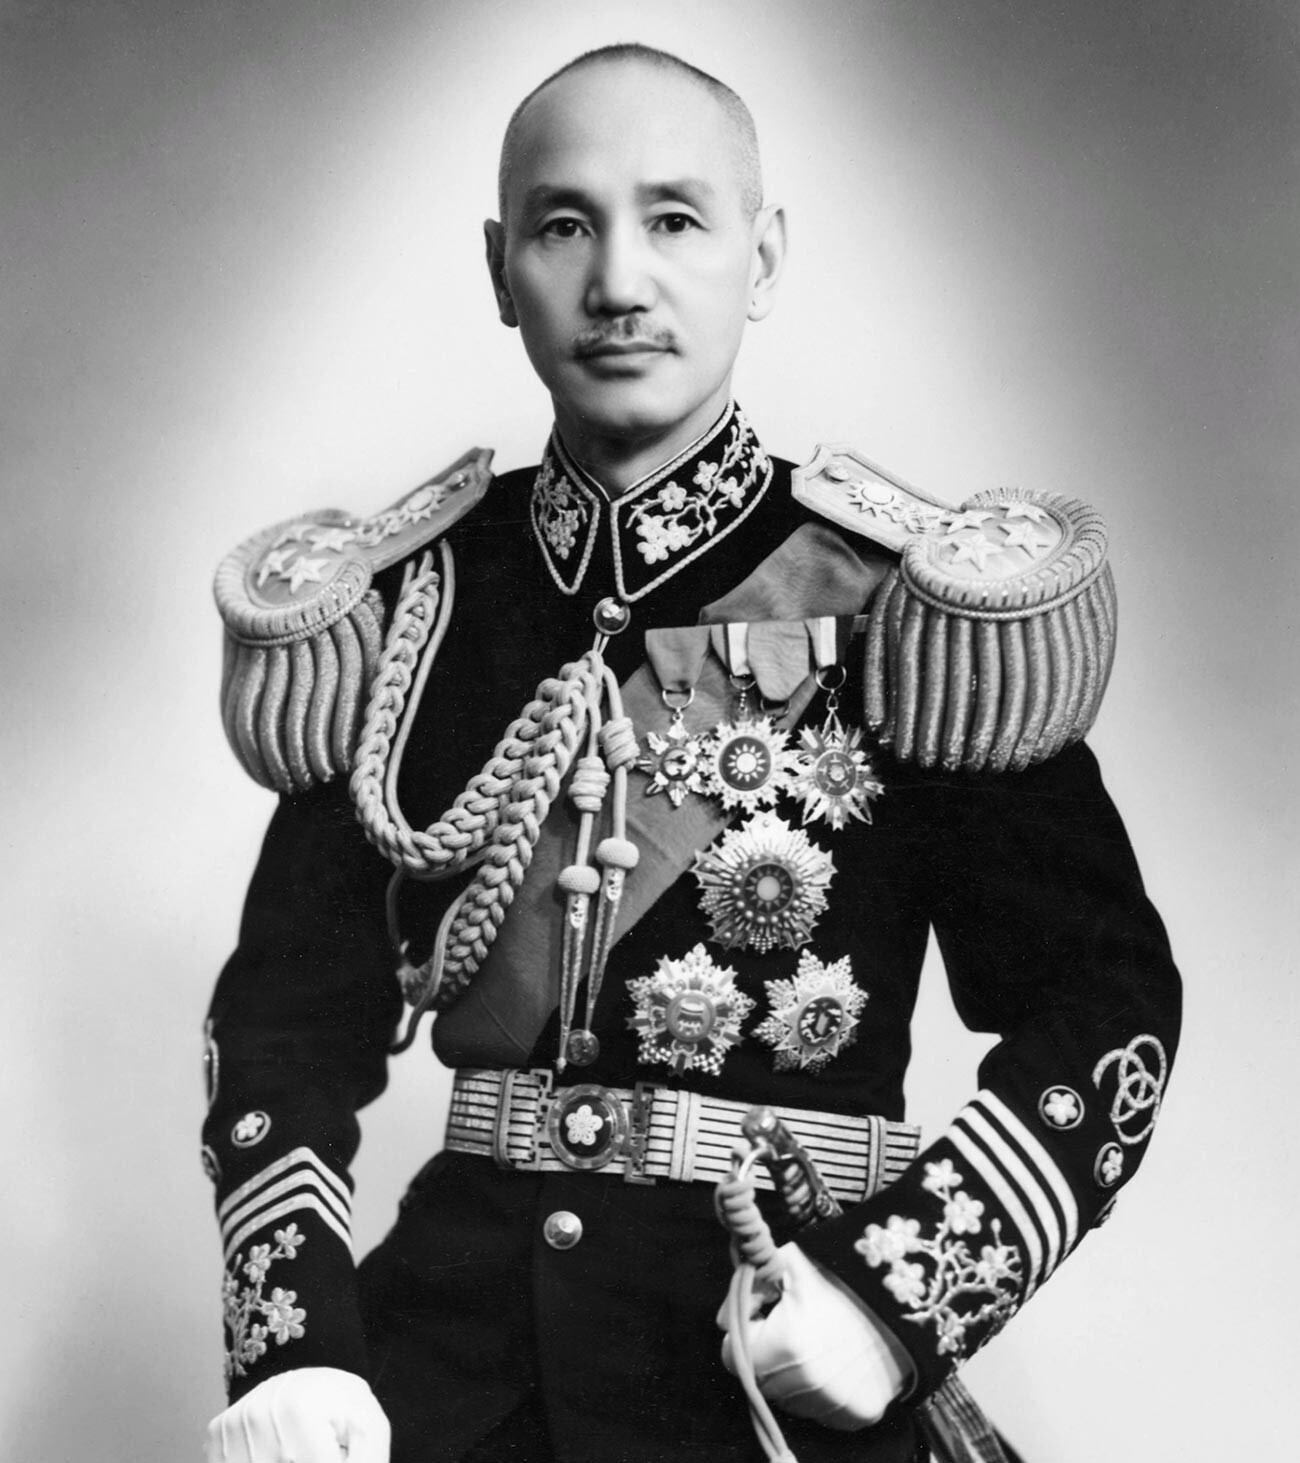 Chiang Kai-shek.